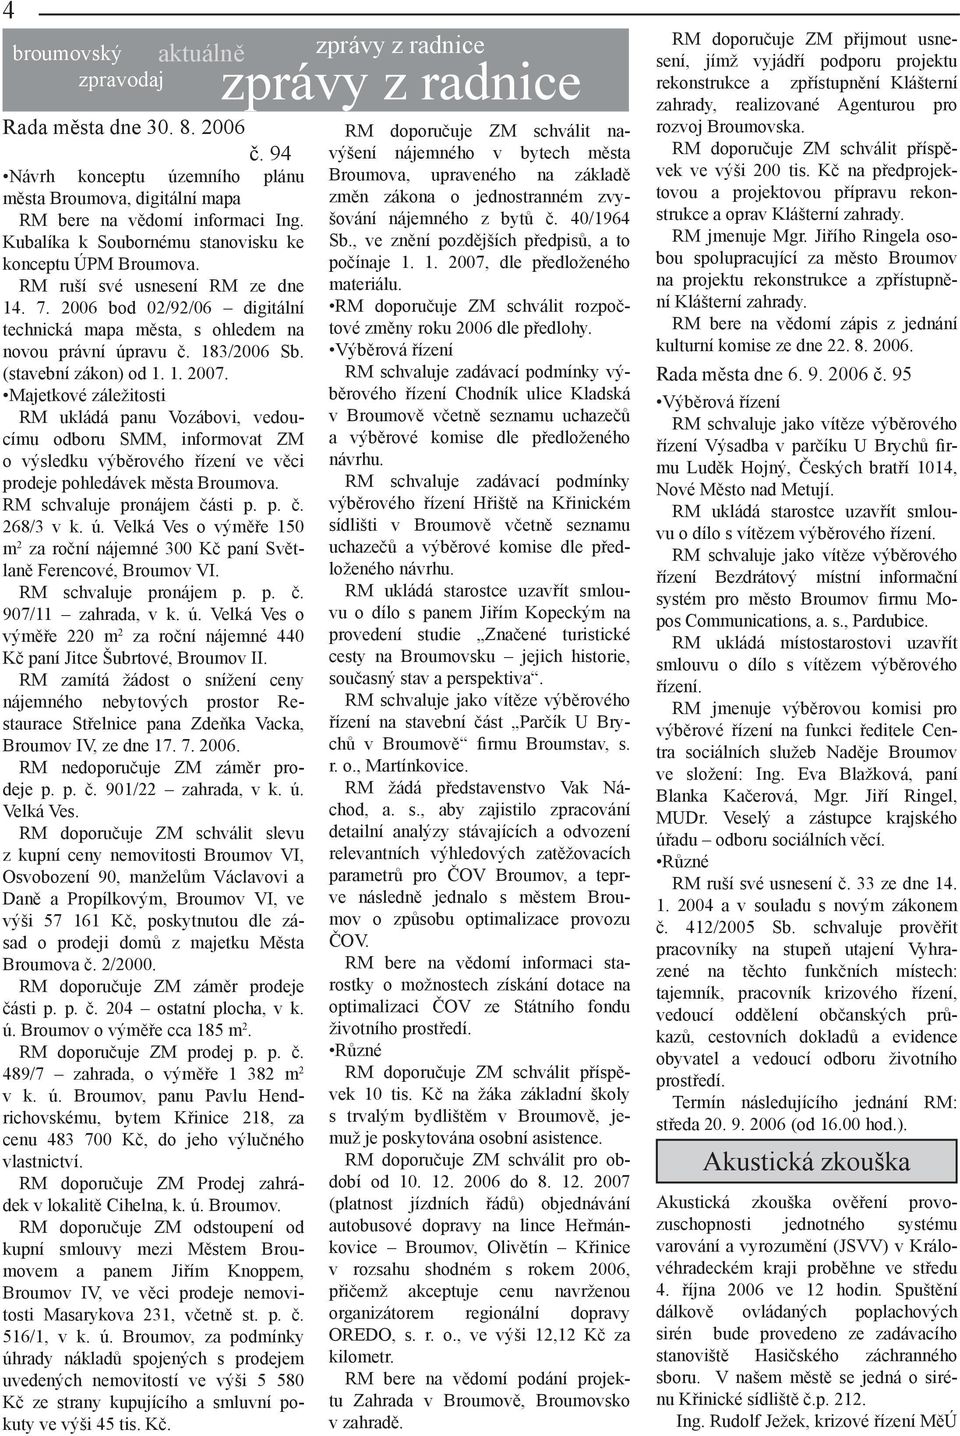 (stavební zákon) od 1. 1. 2007. Majetkové záležitosti RM ukládá panu Vozábovi, vedoucímu odboru SMM, informovat ZM o výsledku výběrového řízení ve věci prodeje pohledávek města Broumova.